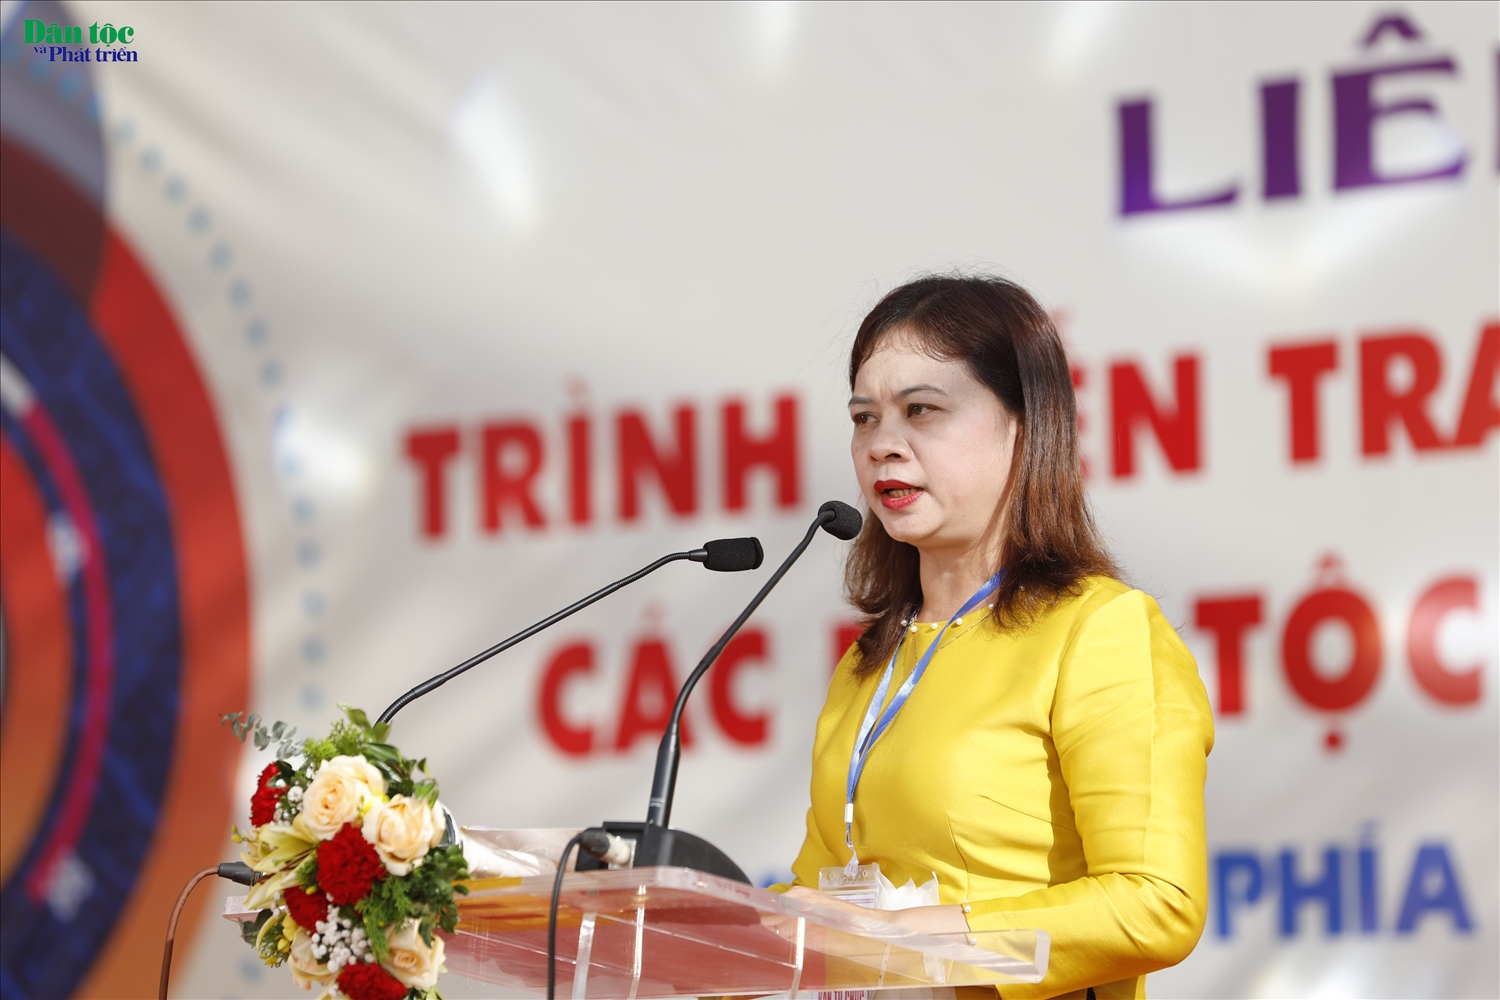 Vụ trưởng Vụ Văn hóa dân tộc (Bộ VHTT&DL) Nguyễn Thị Hải Nhung phát biểu khai mạc buổi lễ